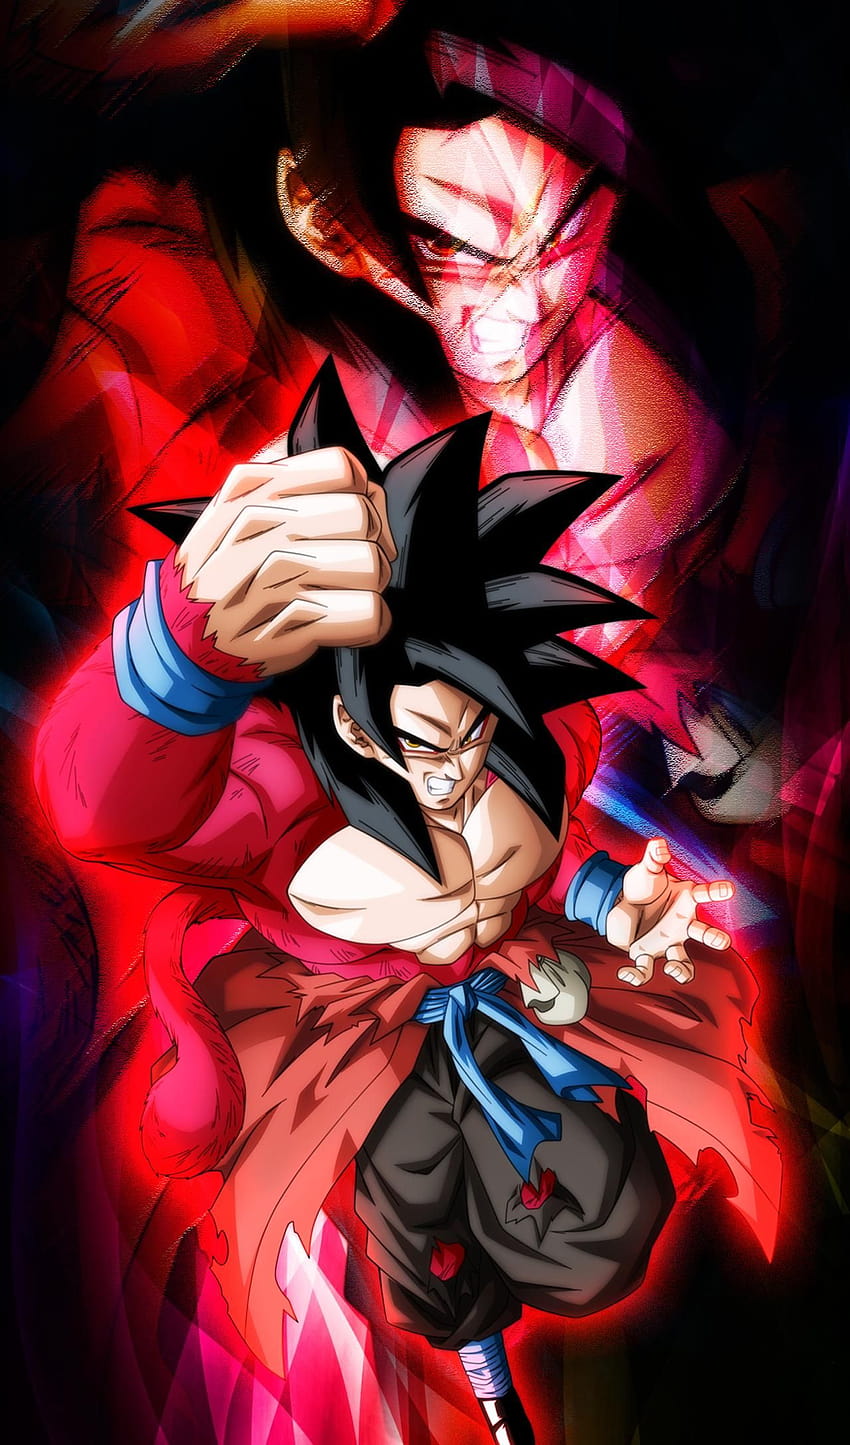 Super Saiyan 4 Xeno Goku B oleh JemmyPranata, xeno goku hitam wallpaper ponsel HD